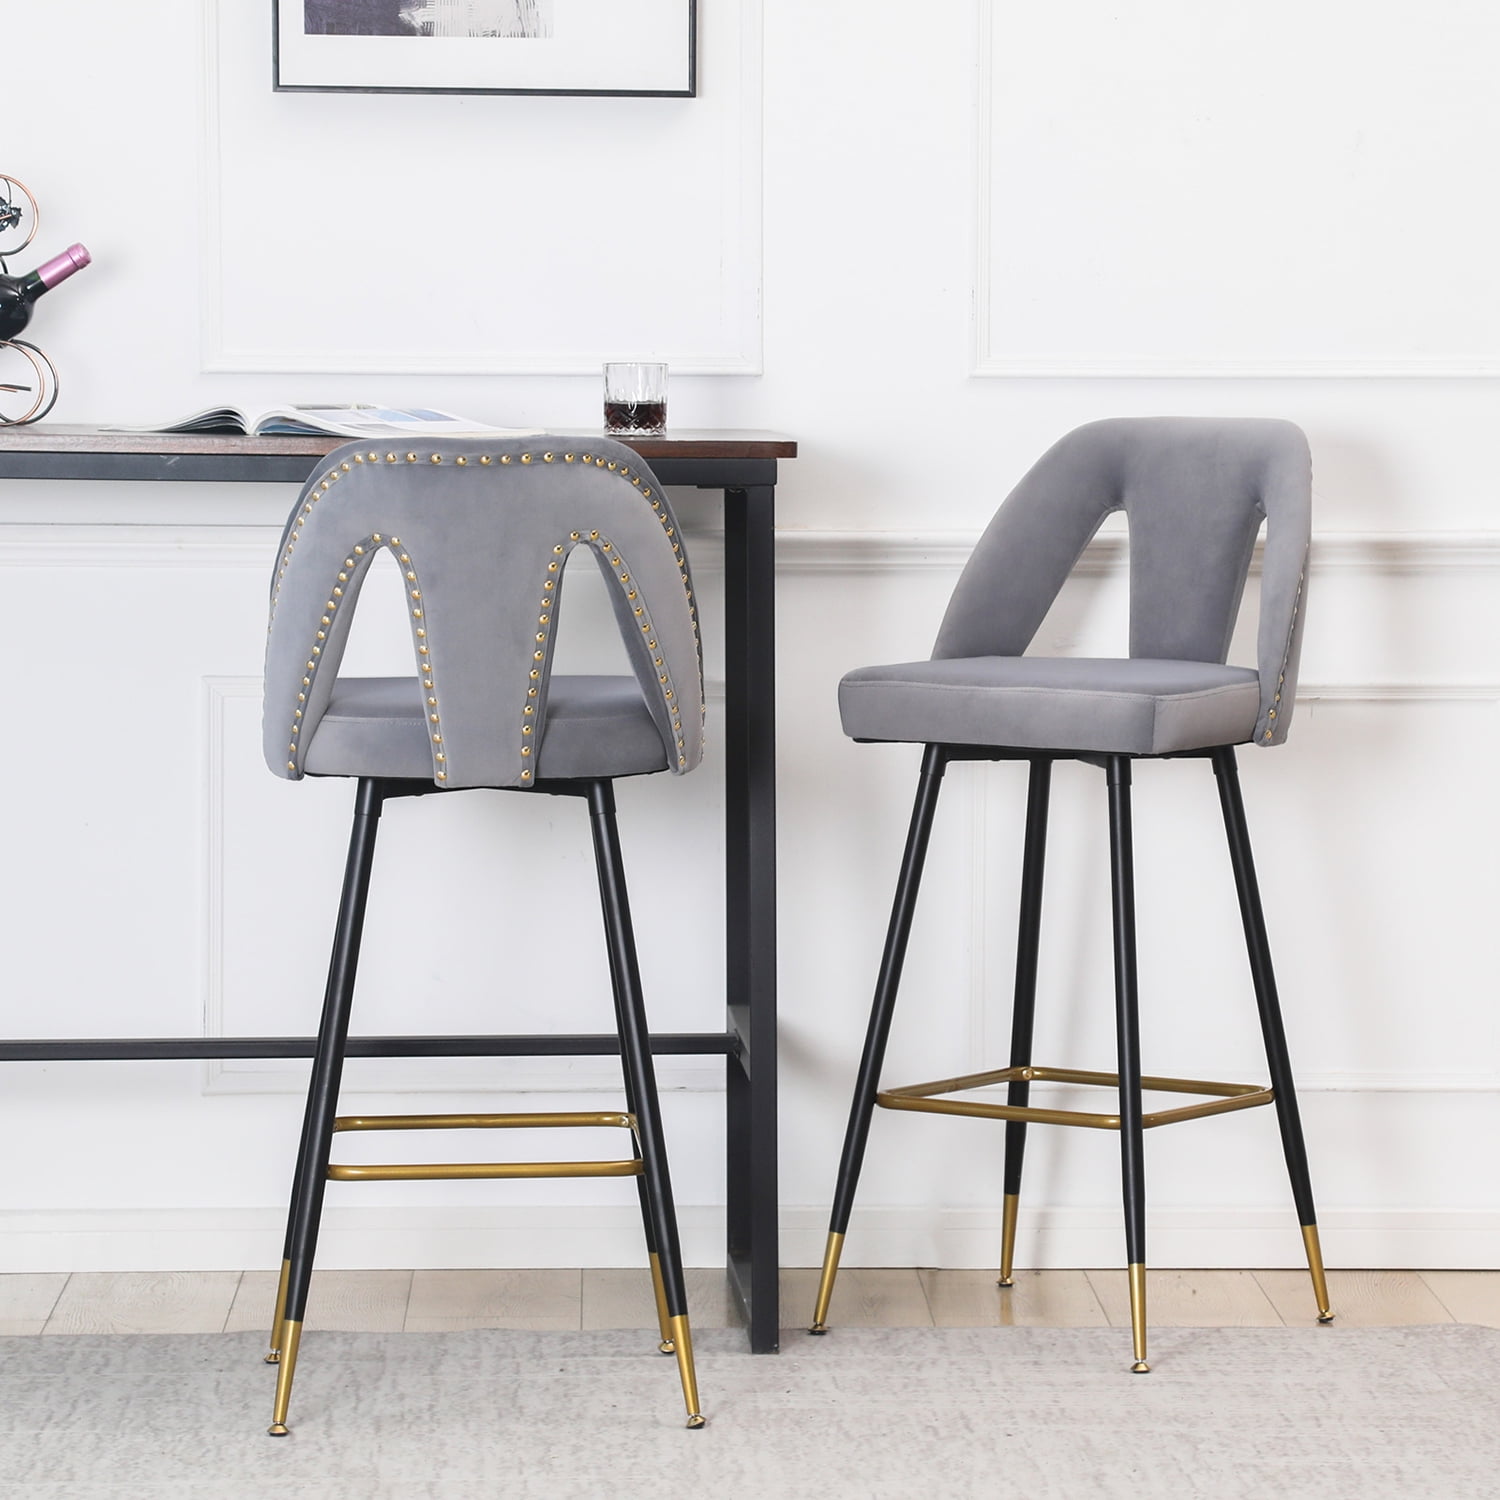 2x Grey Fabric Barstools Metal Leg Breakfast Pub Chair Kitchen Bar Furniture 